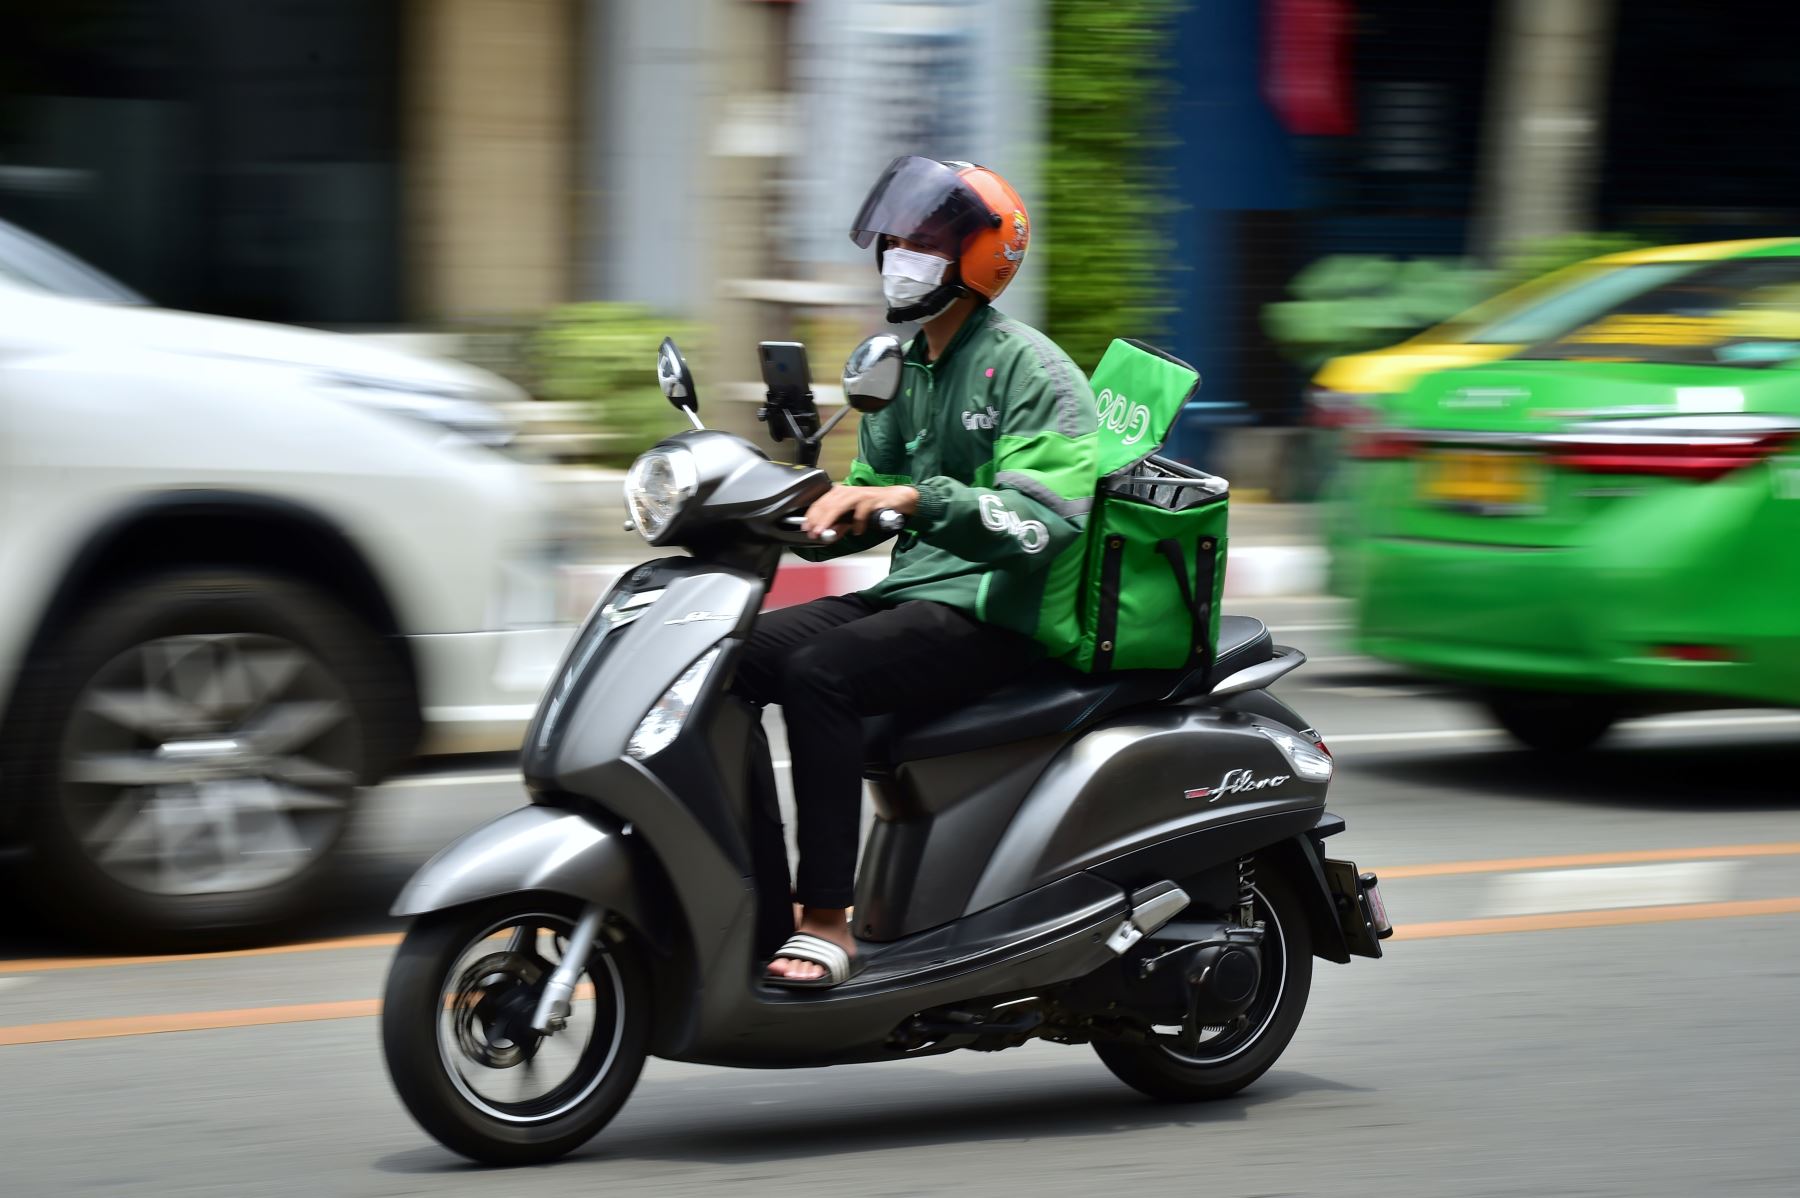 Municipalidad de Miraflores regula estacionamiento de motocicletas dedicadas al reparto de productos a domicilio. AFP